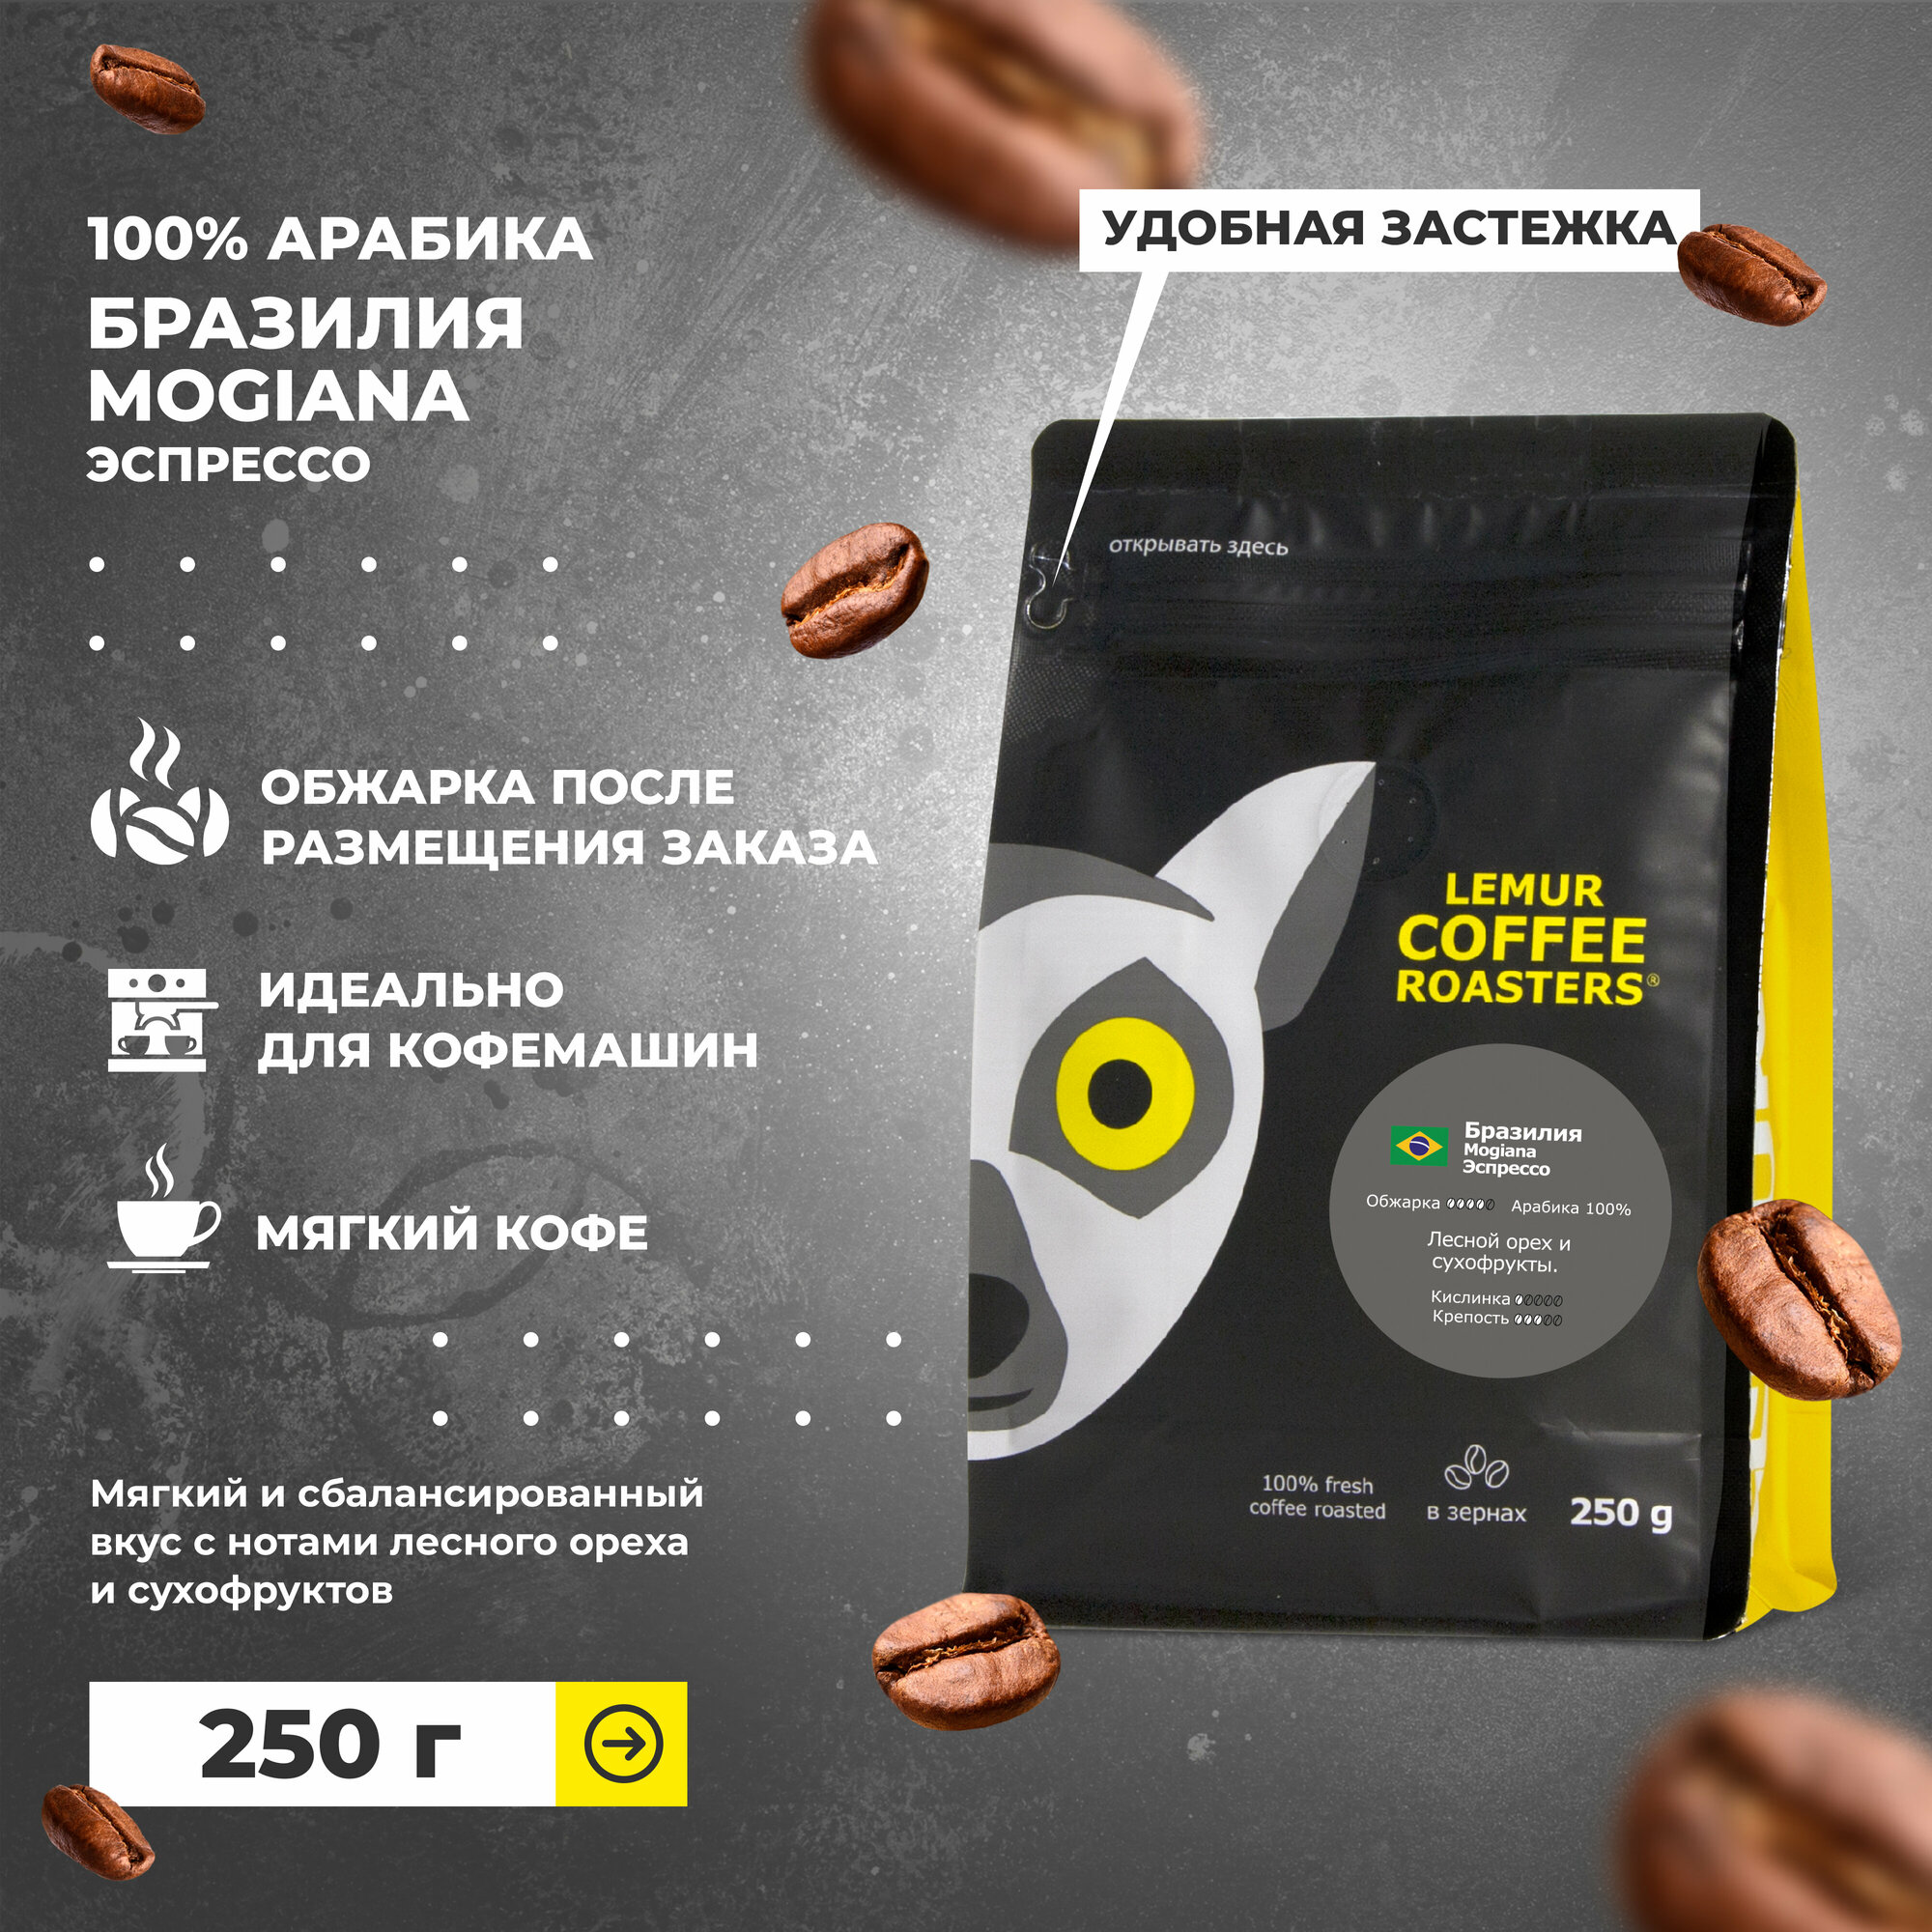 Свежеобжаренный кофе в зернах Бразилия Mogiana Эспрессо Lemur Coffee Roasters, 250 г - фотография № 1